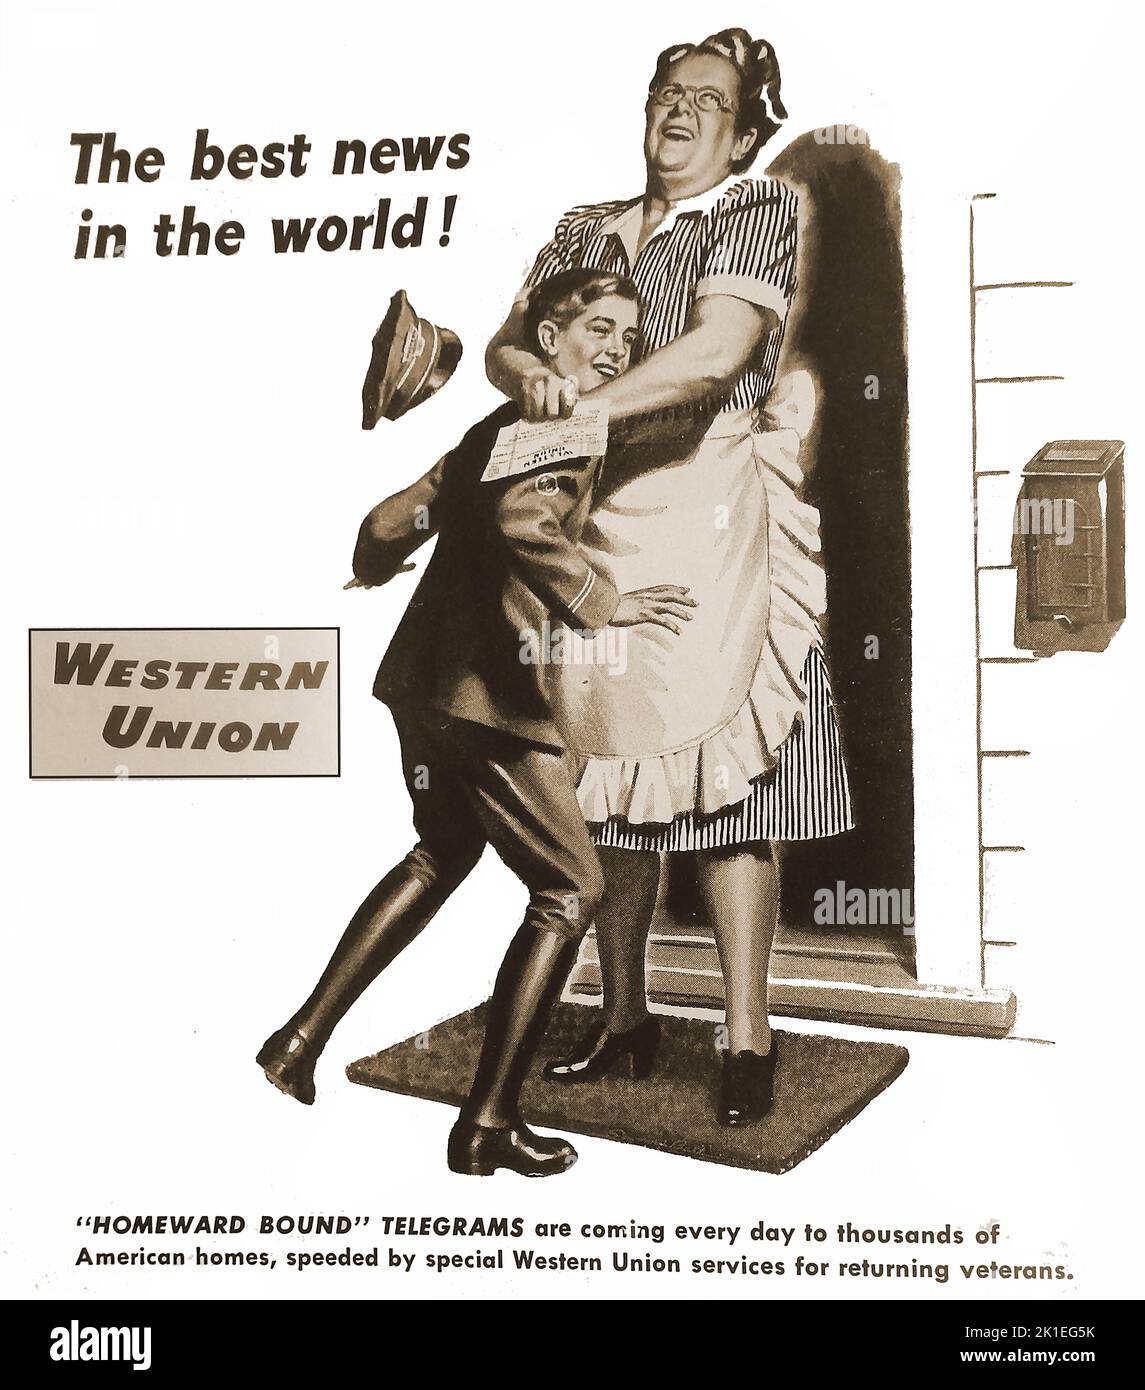 Un anuncio de posguerra de 1947 para telegramas de Western Union Homeward Bound anunciando el regreso a casa de soldados, marineros y aviadores después de servir en la Guerra Mundial de 2nd. Un ama de casa abraza al niño del telegrama con deleite Foto de stock